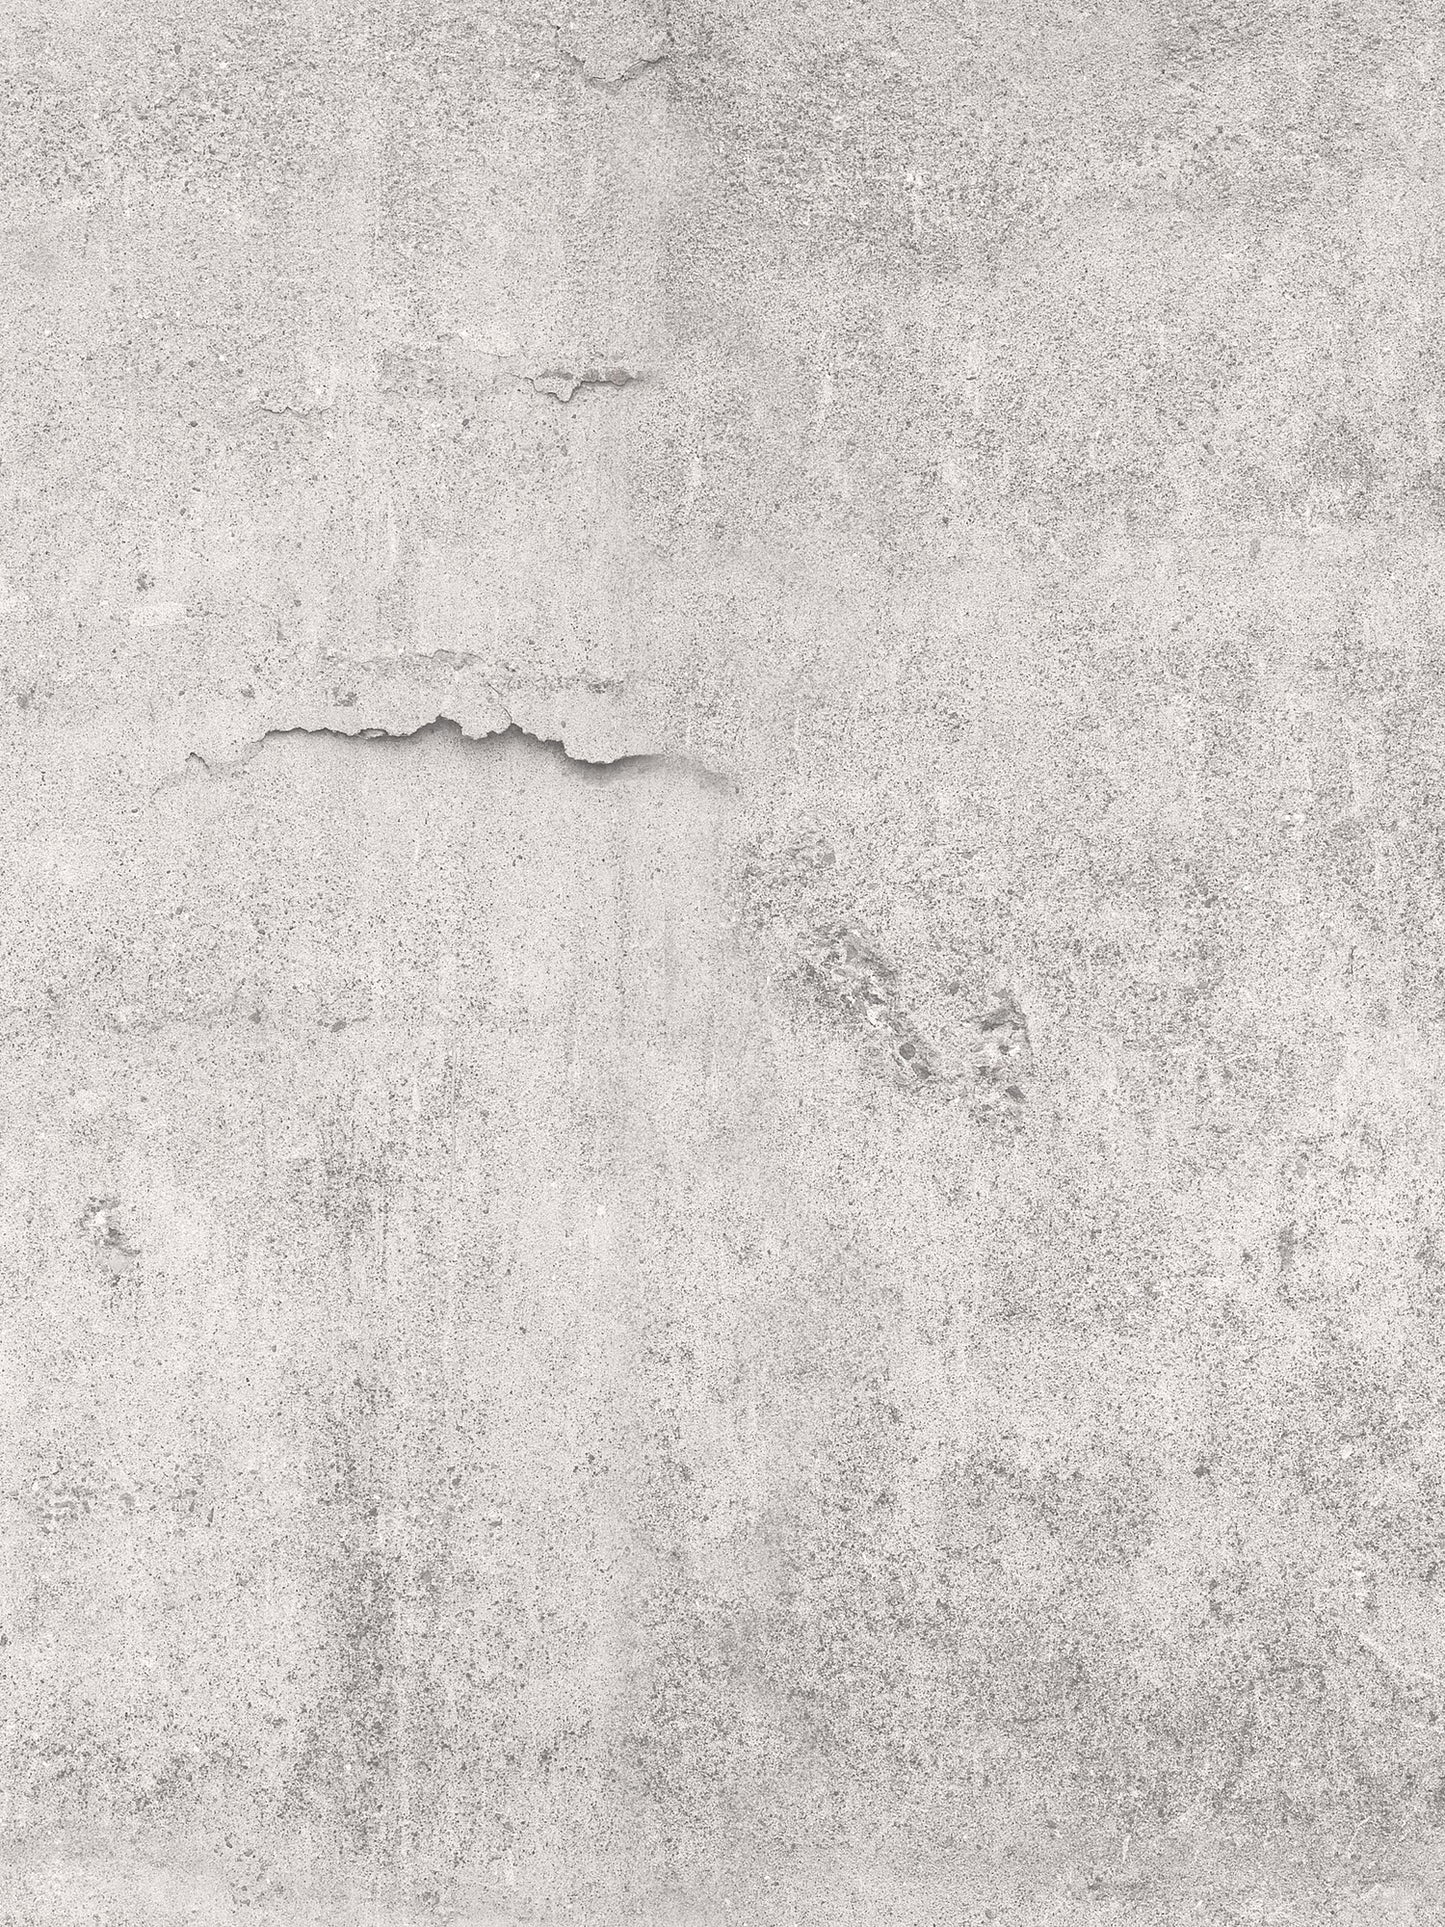 Concrete Wall - 9416W